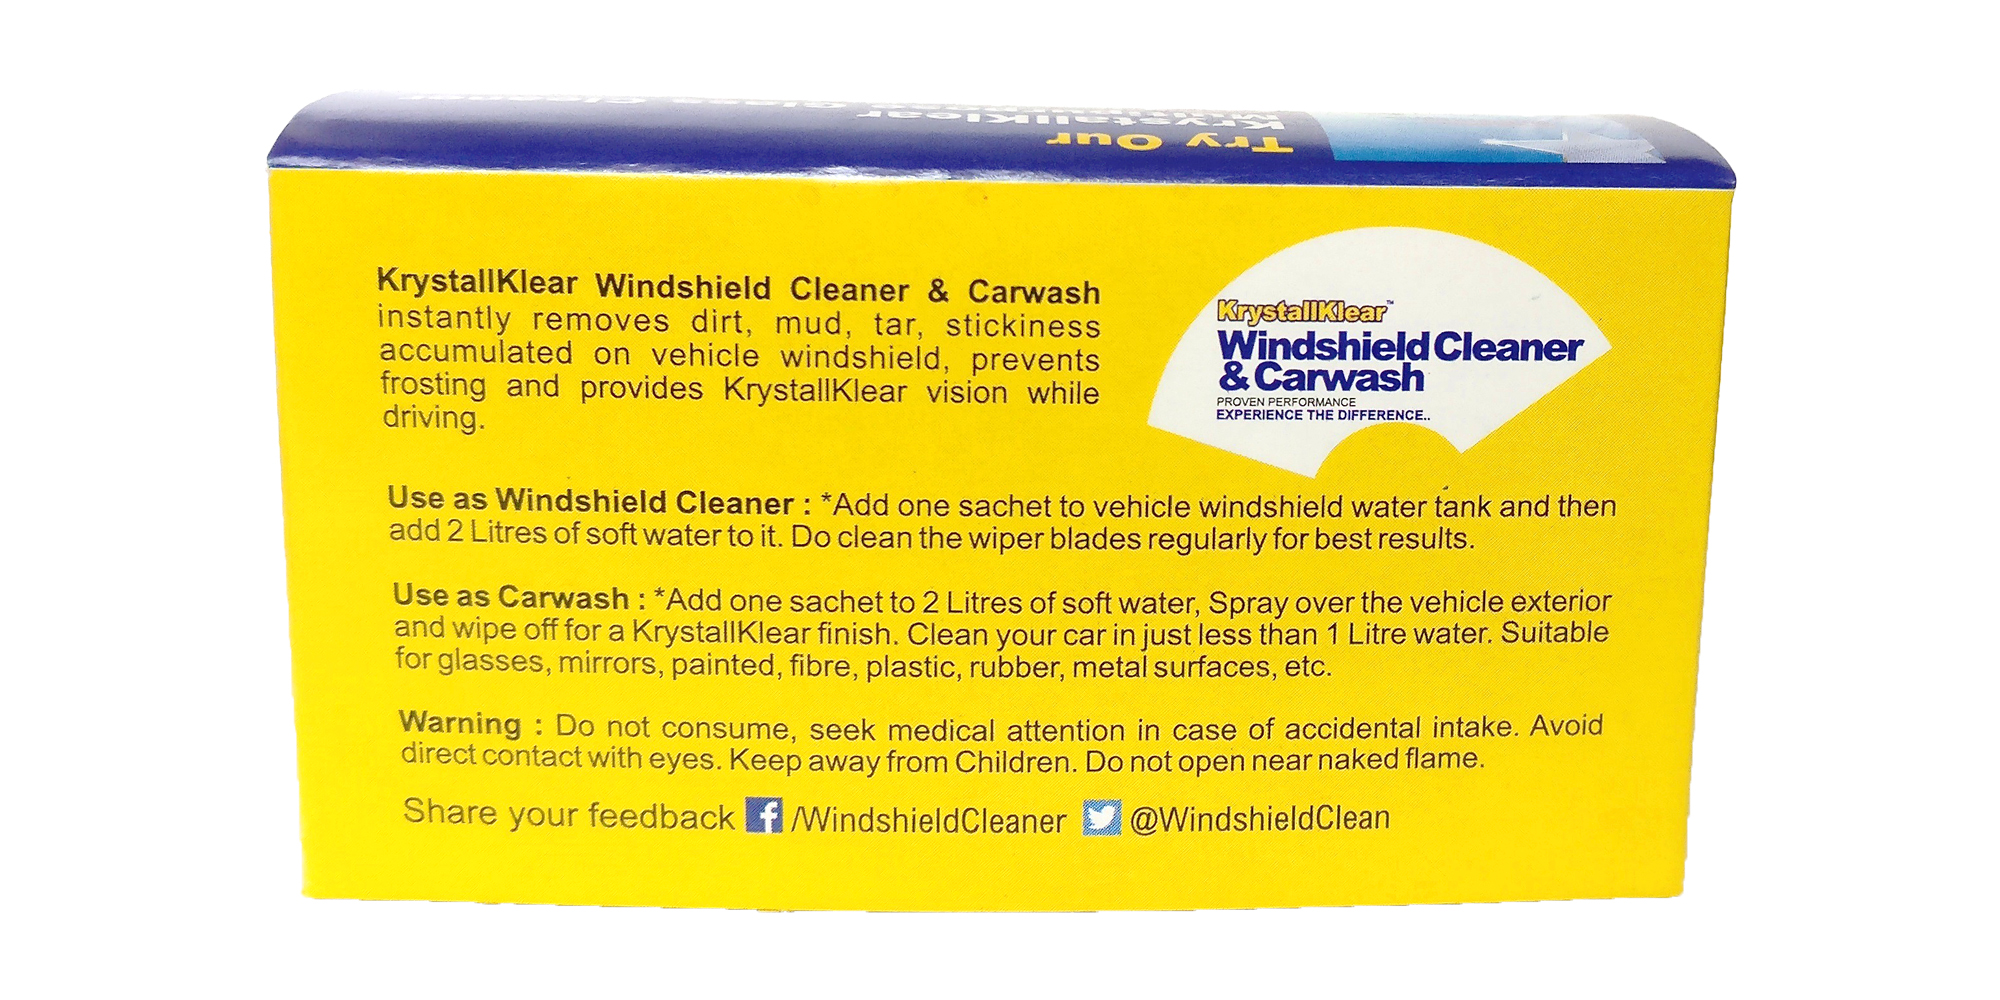 Windshield Cleaner & Carwash